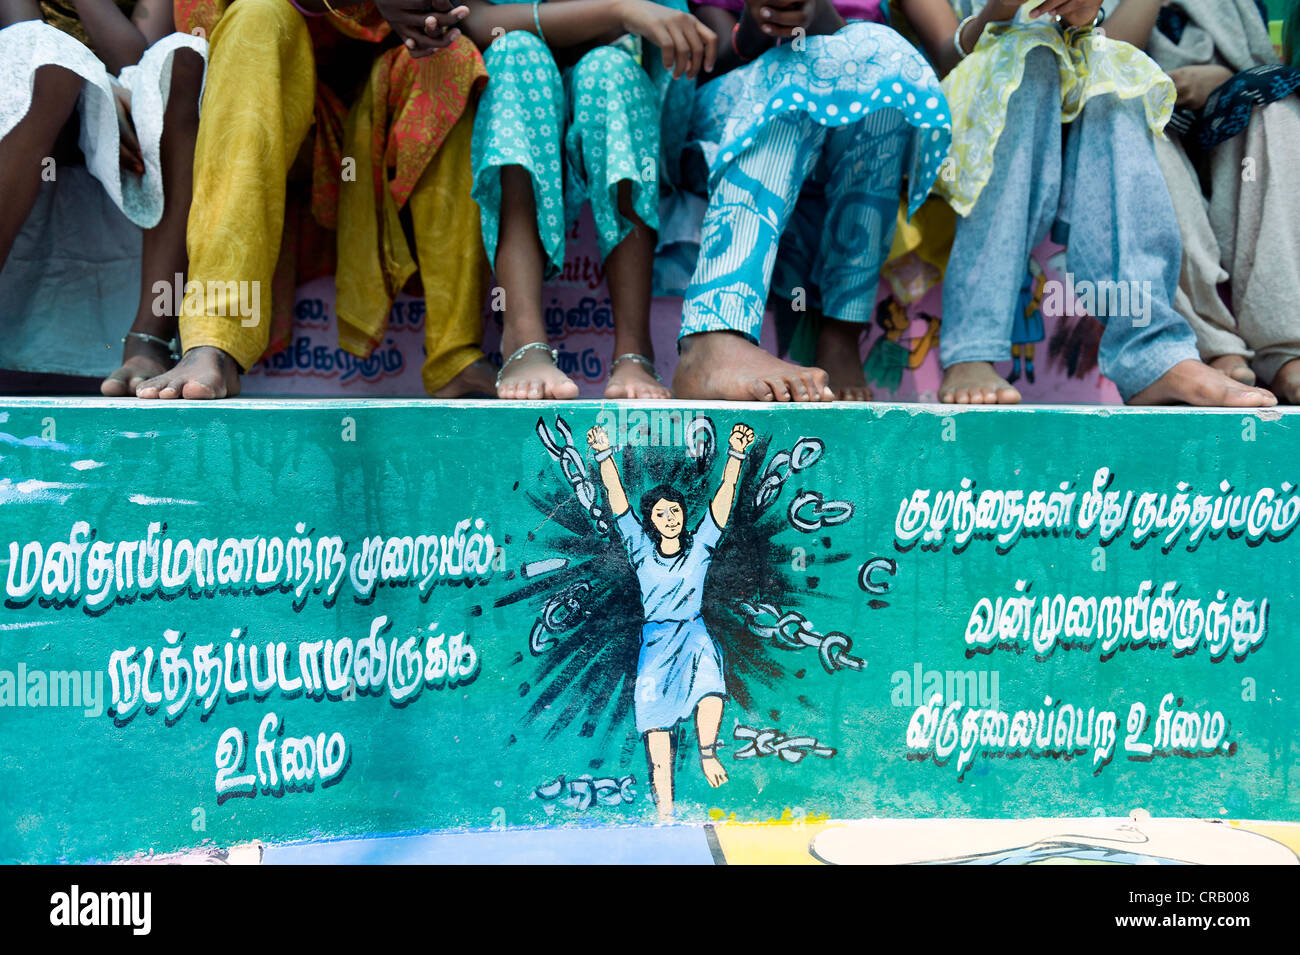 Gemaltes Bild gegen Kind Arbeit, Kutti Rajiyam oder Kinder Welt, Karur, Tamil Nadu, Indien, Asien Stockfoto